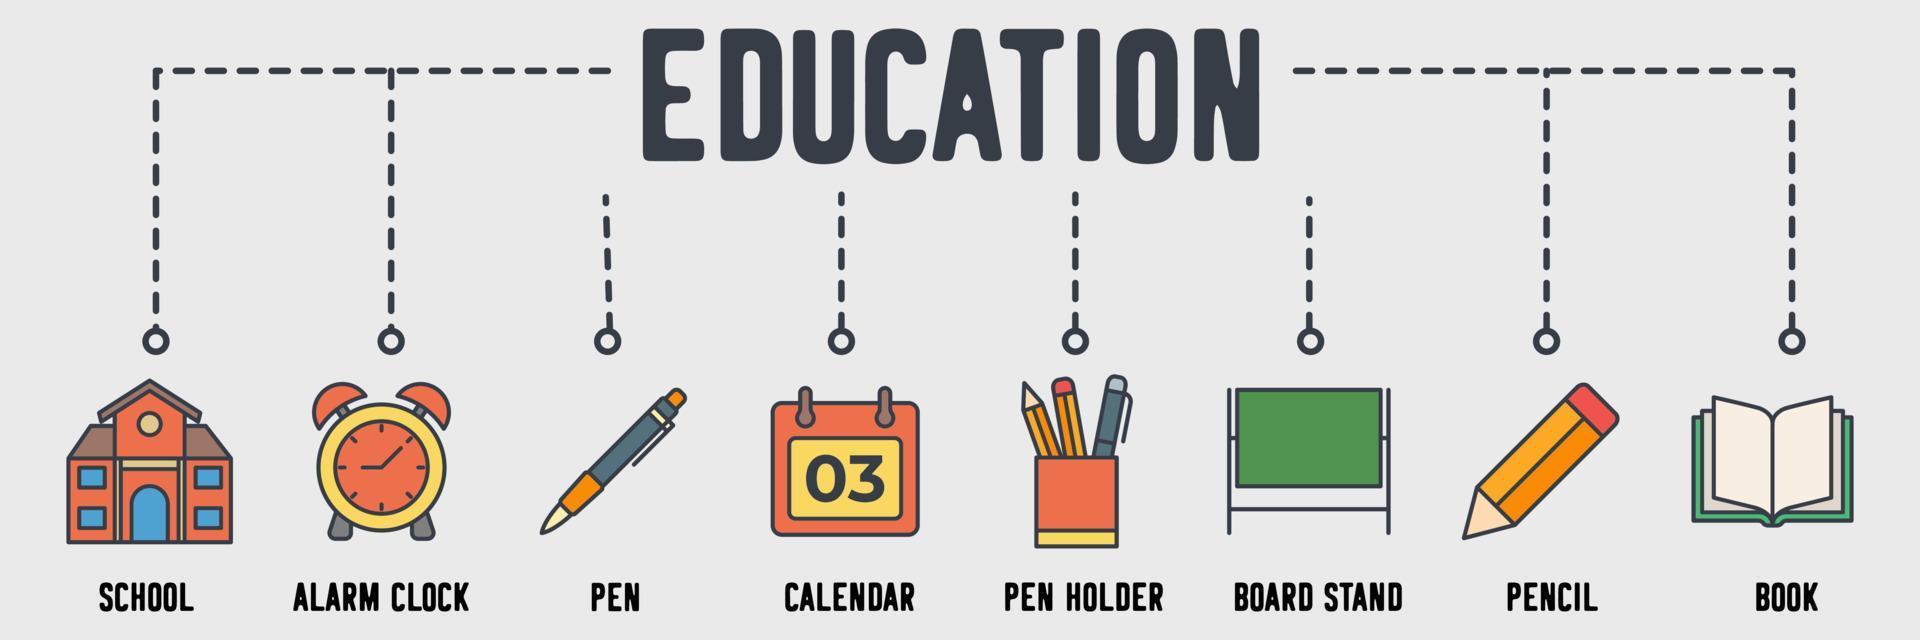 onderwijs banner web pictogram. schoolgebouw, wekker, pen, kalender, pennenhouder, bordstandaard, potlood, boek vector illustratie concept.